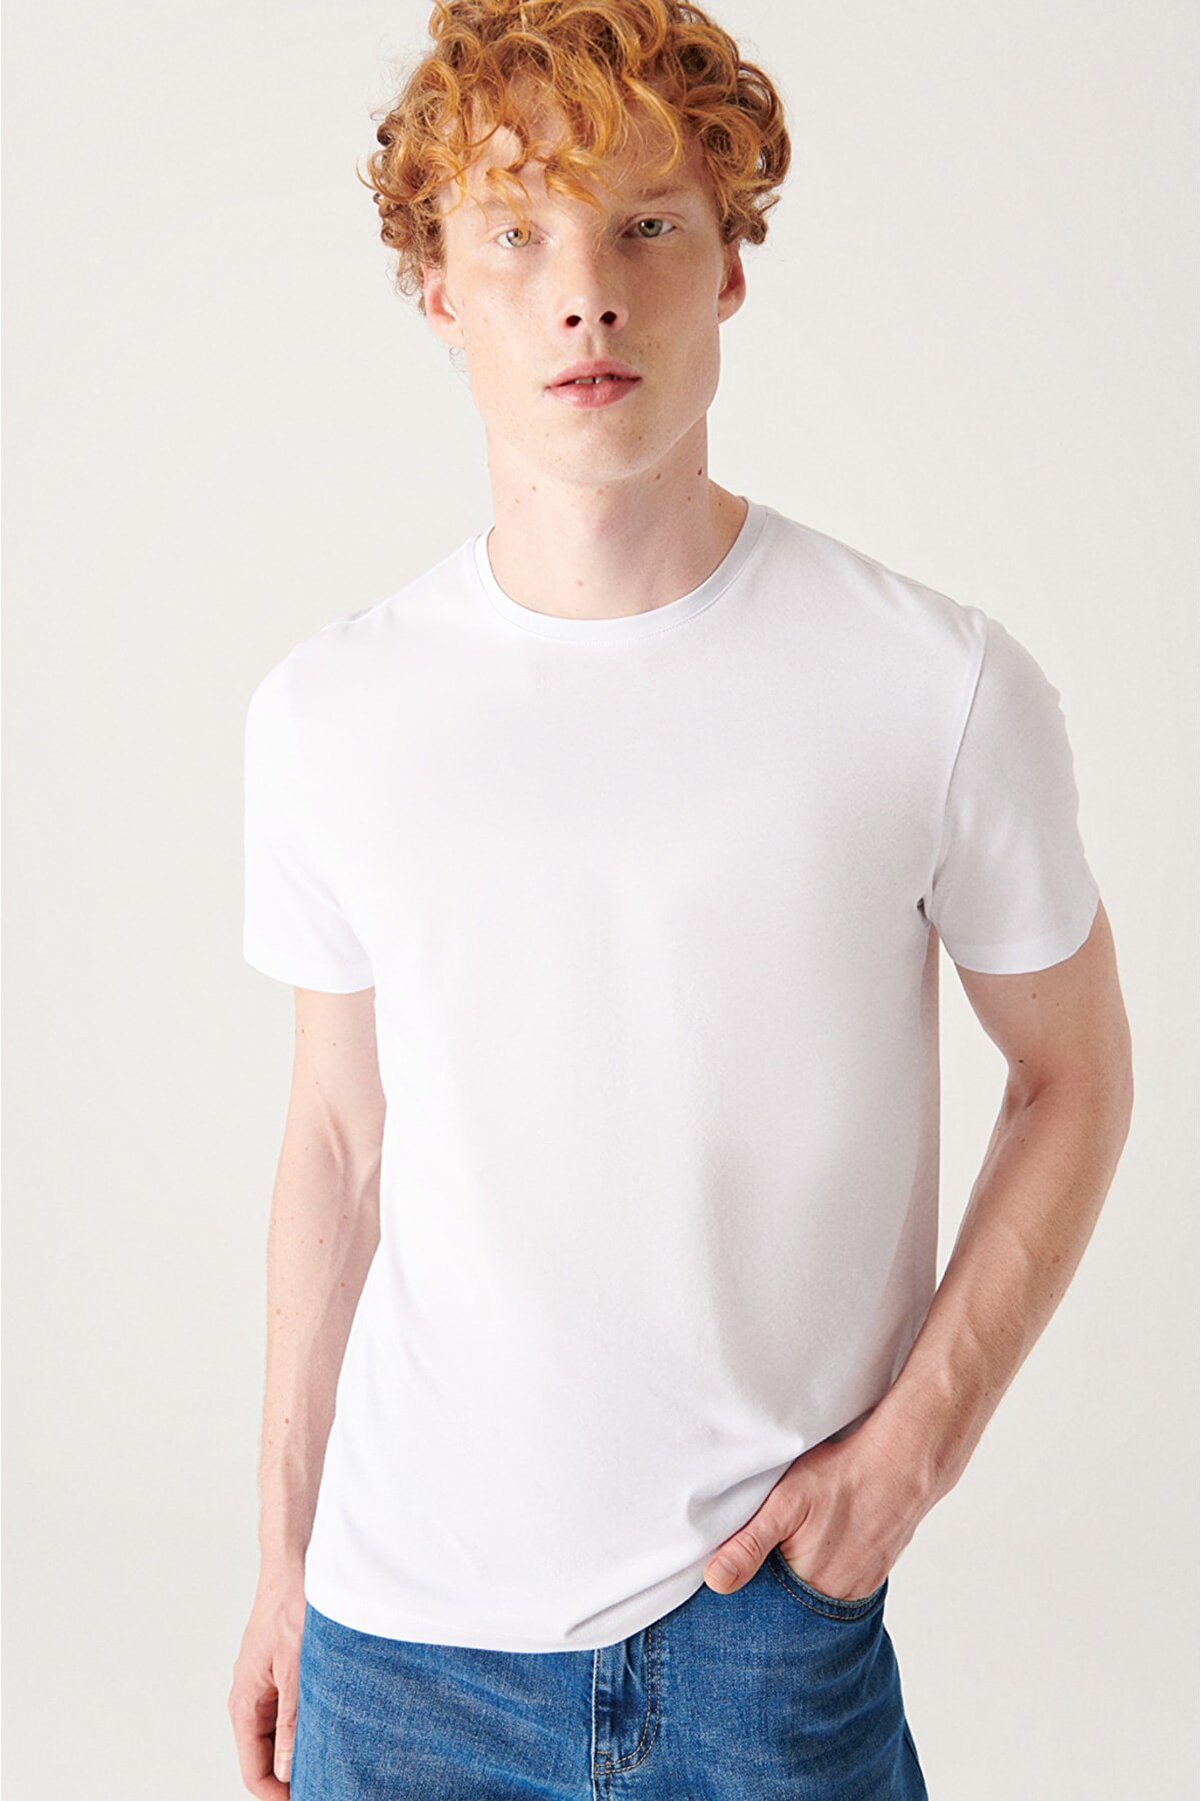 Avva Erkek Beyaz Slim Fit %100 Pamuk Bisiklet Yaka T-shirt E001000